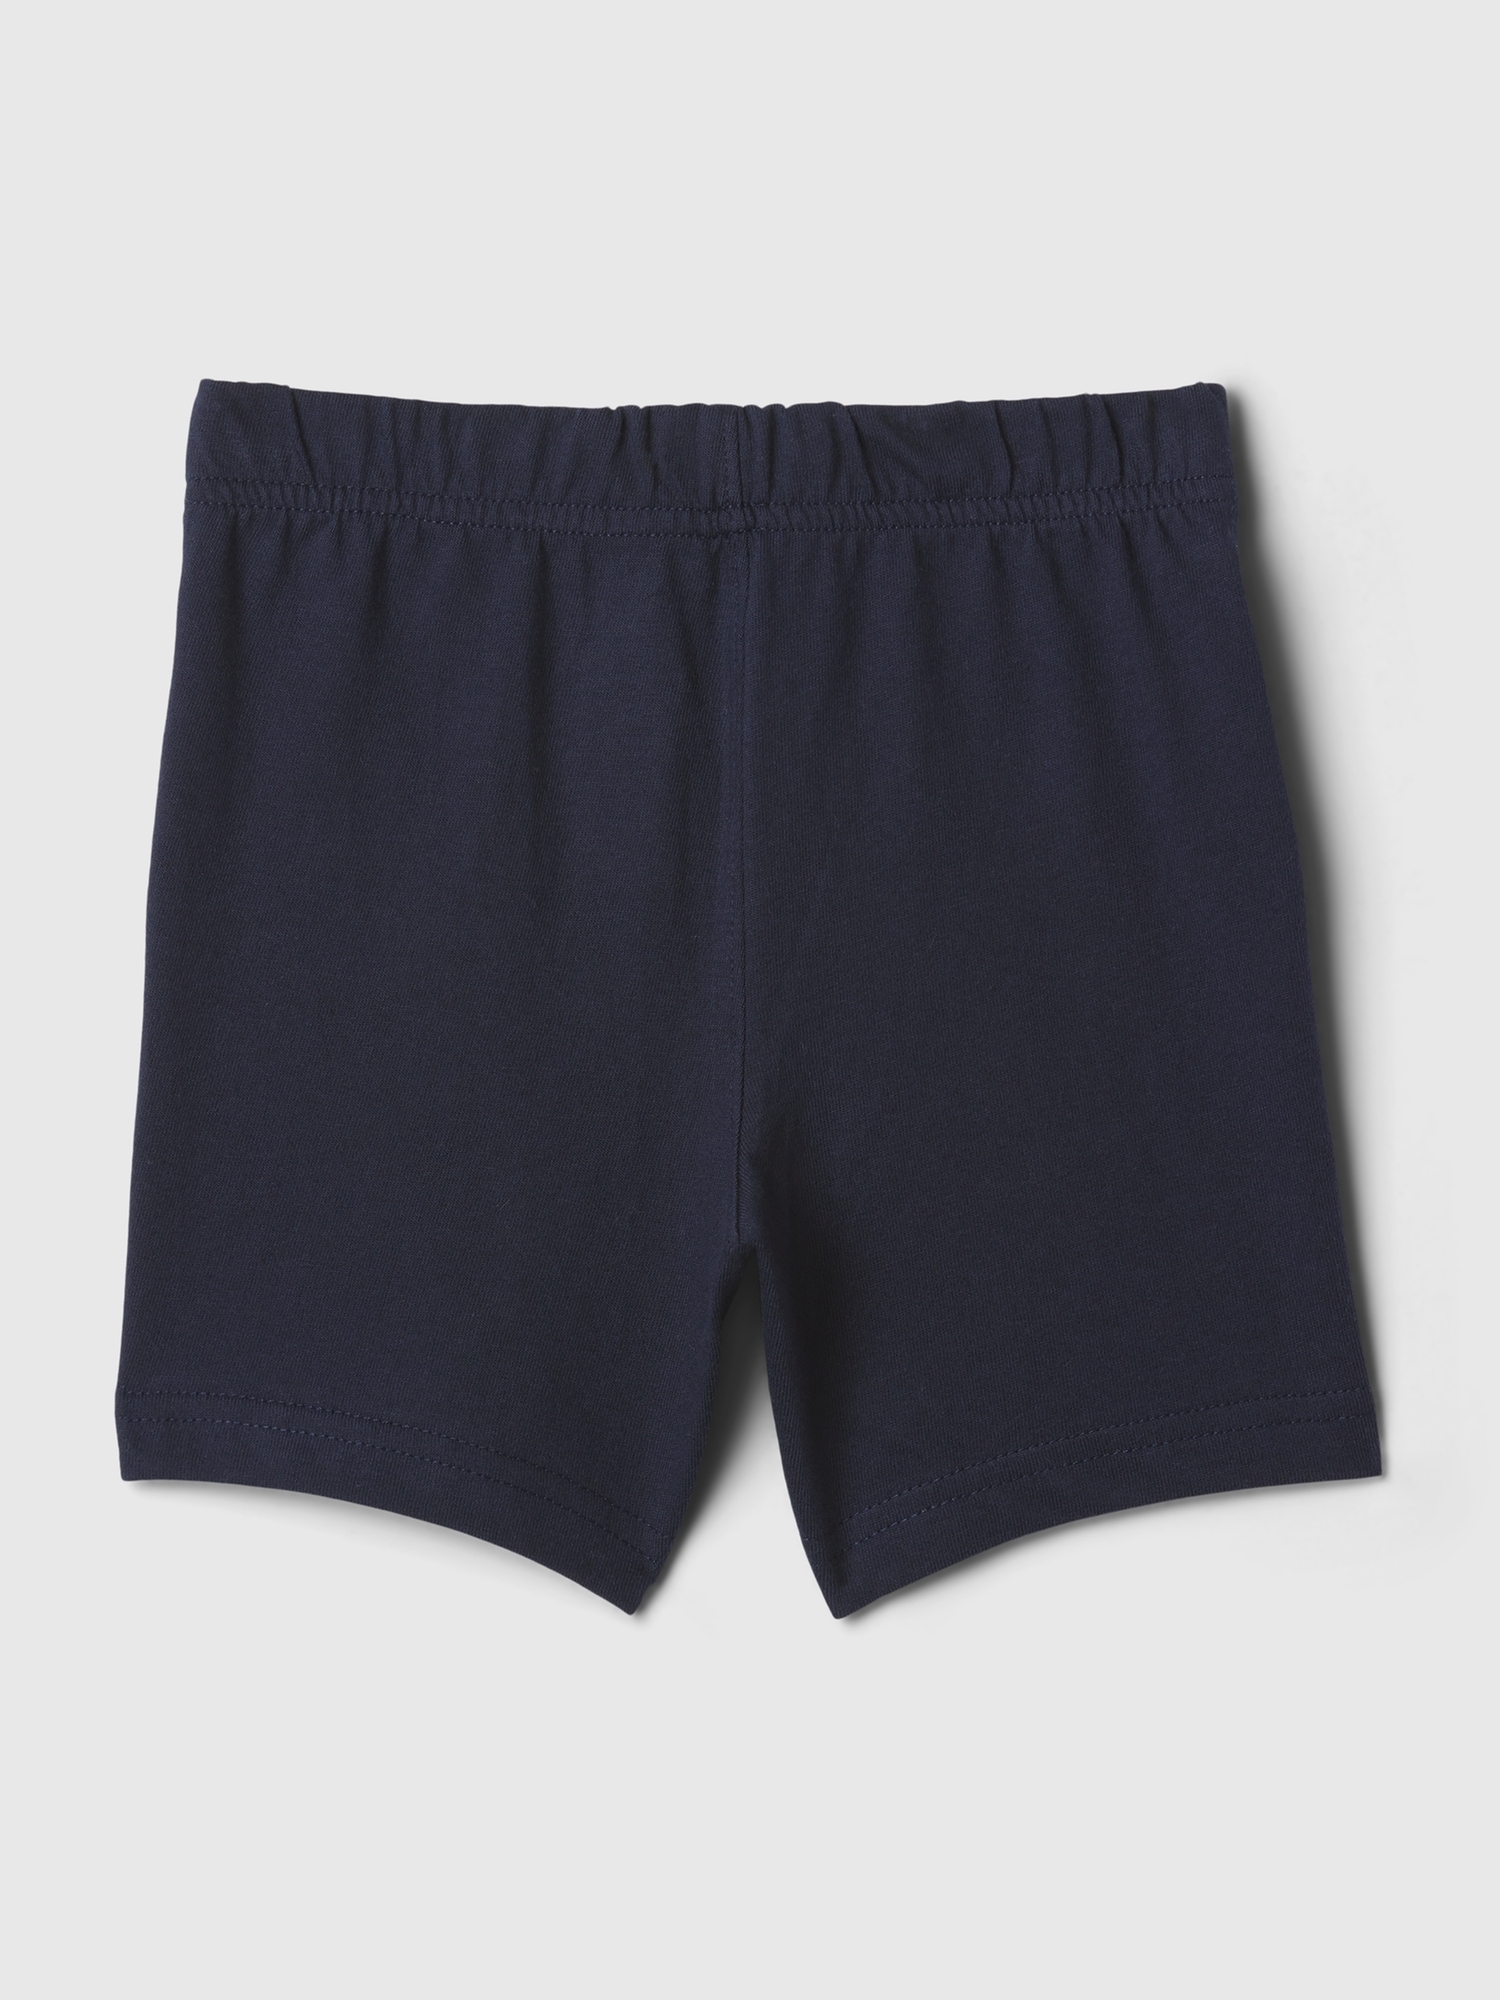 GAP Kids' Shorts - Boys